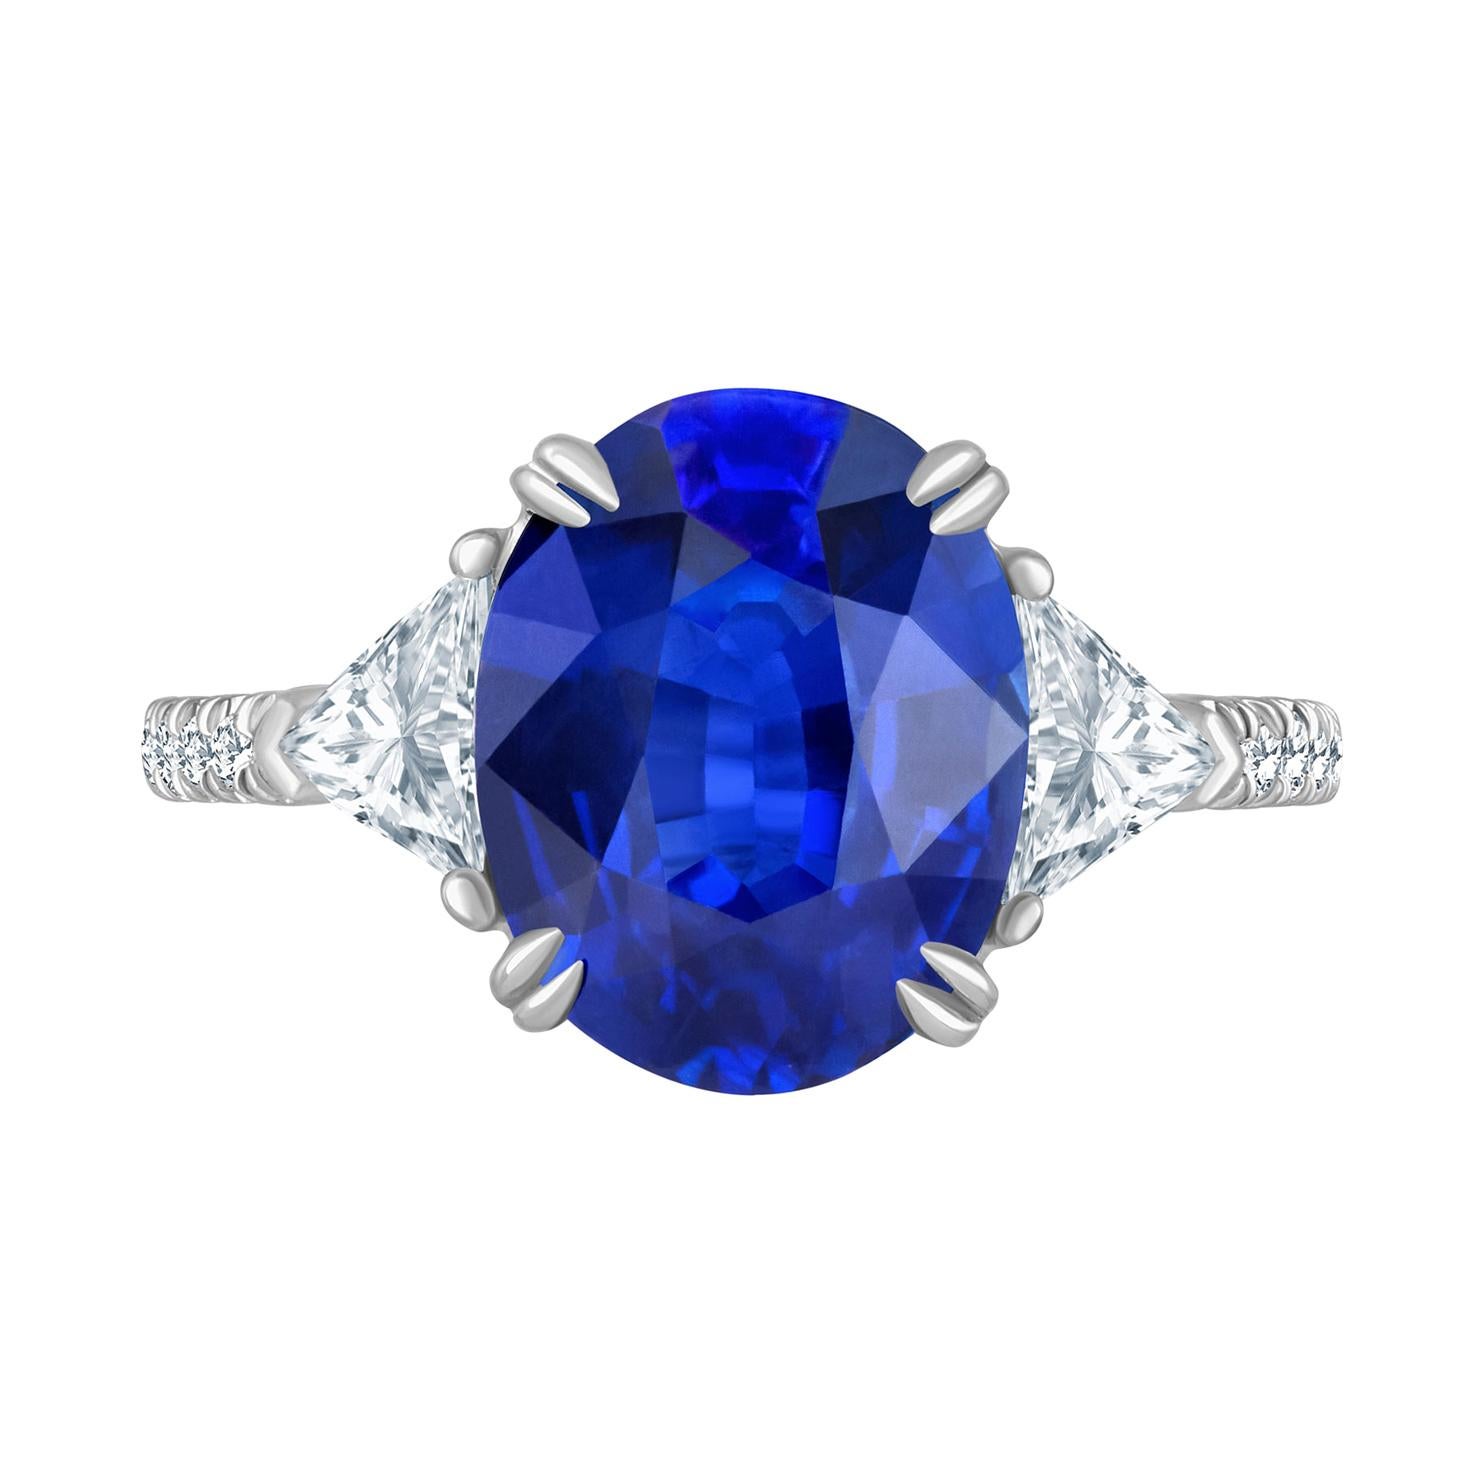 Emilio Jewelry Certified Vivid Blue Ceylon Sapphire Diamond Ring